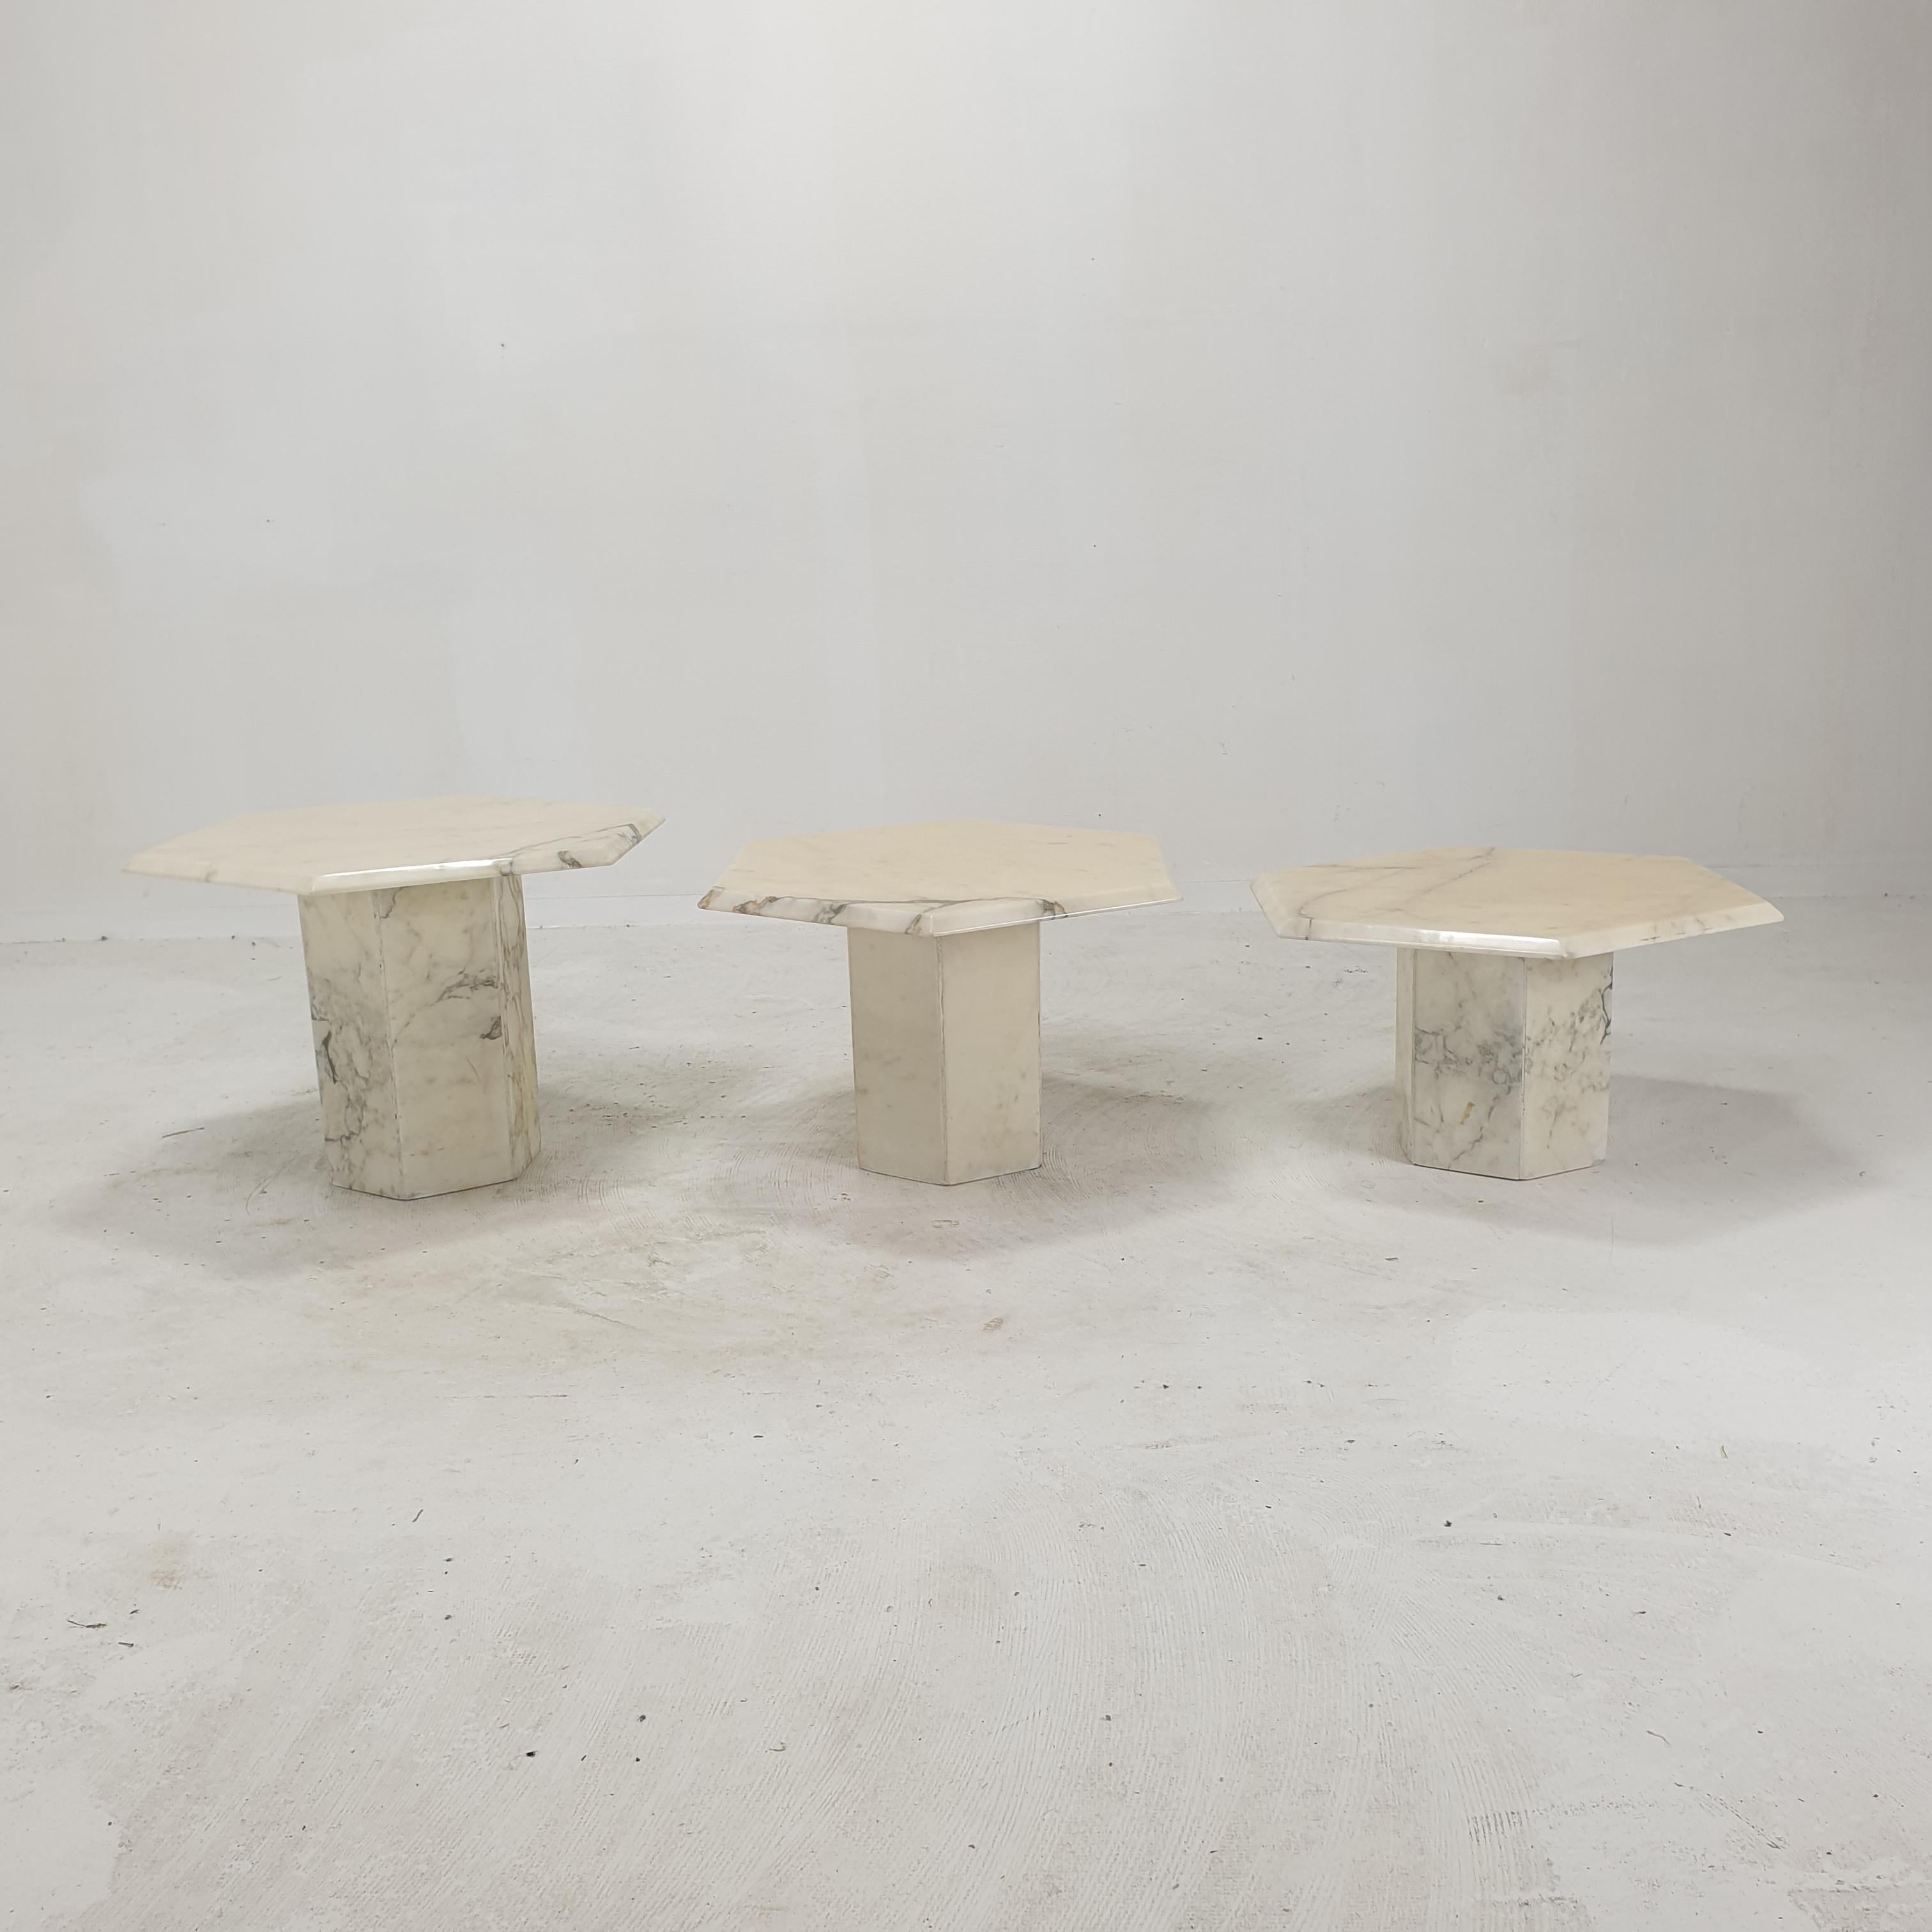 Très bel ensemble de 3 tables basses ou tables d'appoint italiennes, fabriquées à la main en marbre de Carrare. 
Ils peuvent être utilisés à l'intérieur ou à l'extérieur de la maison.

Les tables de ce superbe ensemble ont toutes une hauteur